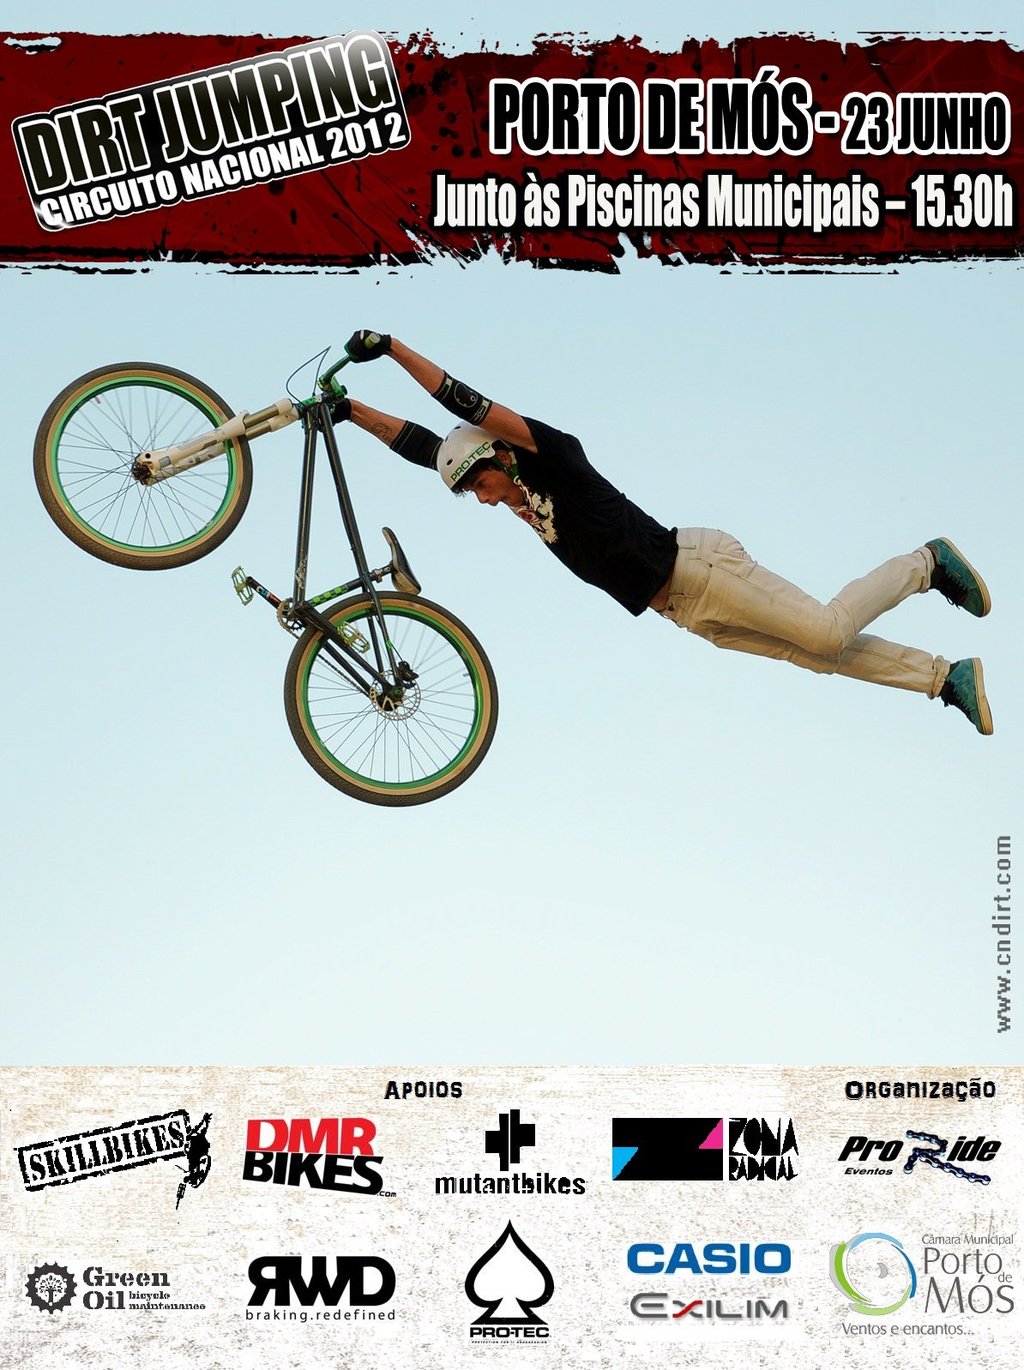 Dirt Jumping - Circuito Nacional 2012